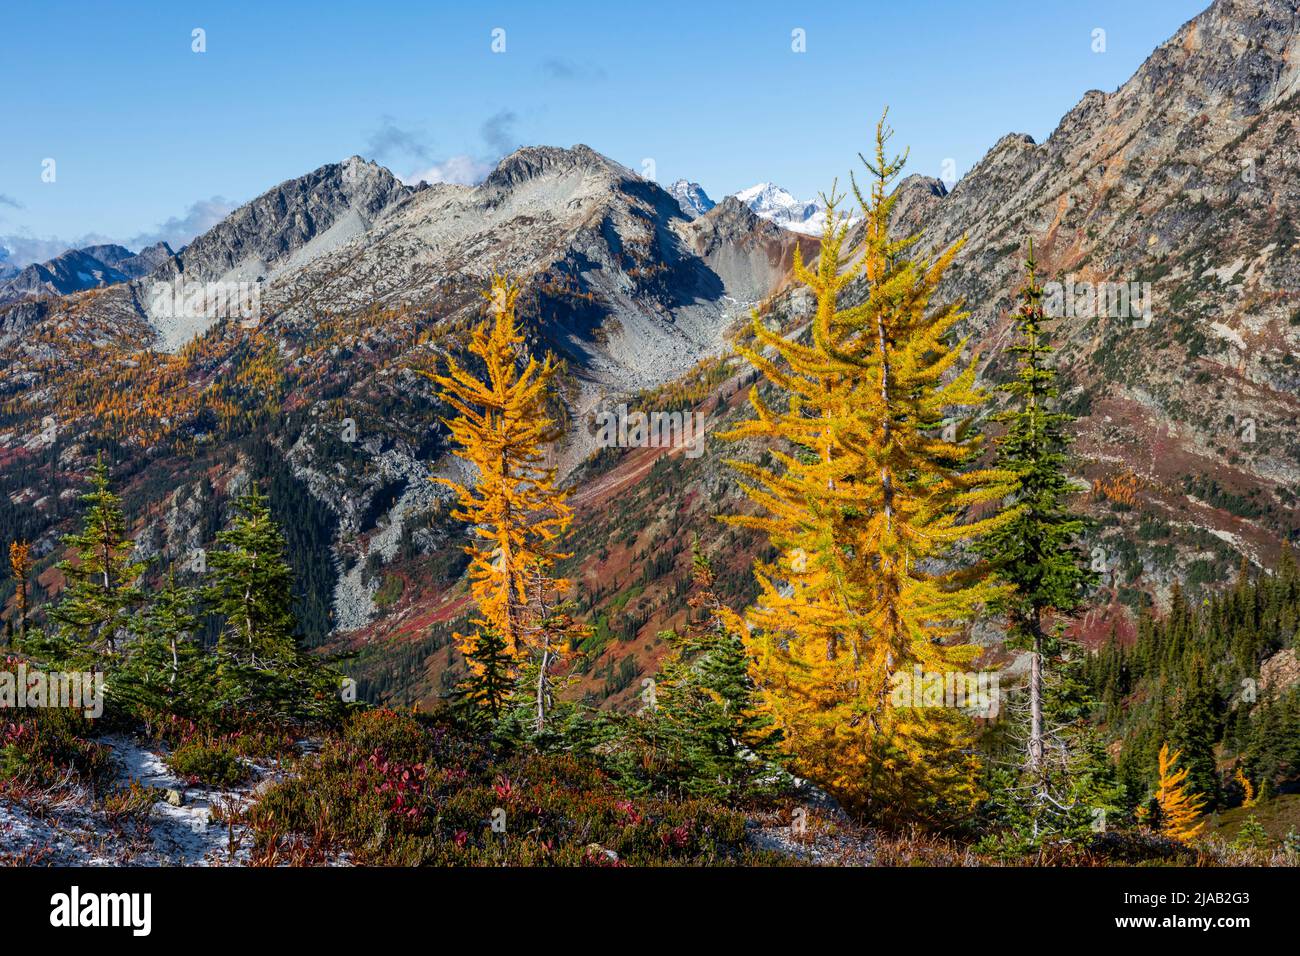 WA21609-00...WASHINGTON - Herbstfärbung unter dem Maple Pass in den North Cascades im Okanogan-Wenatchee National Forest. Stockfoto